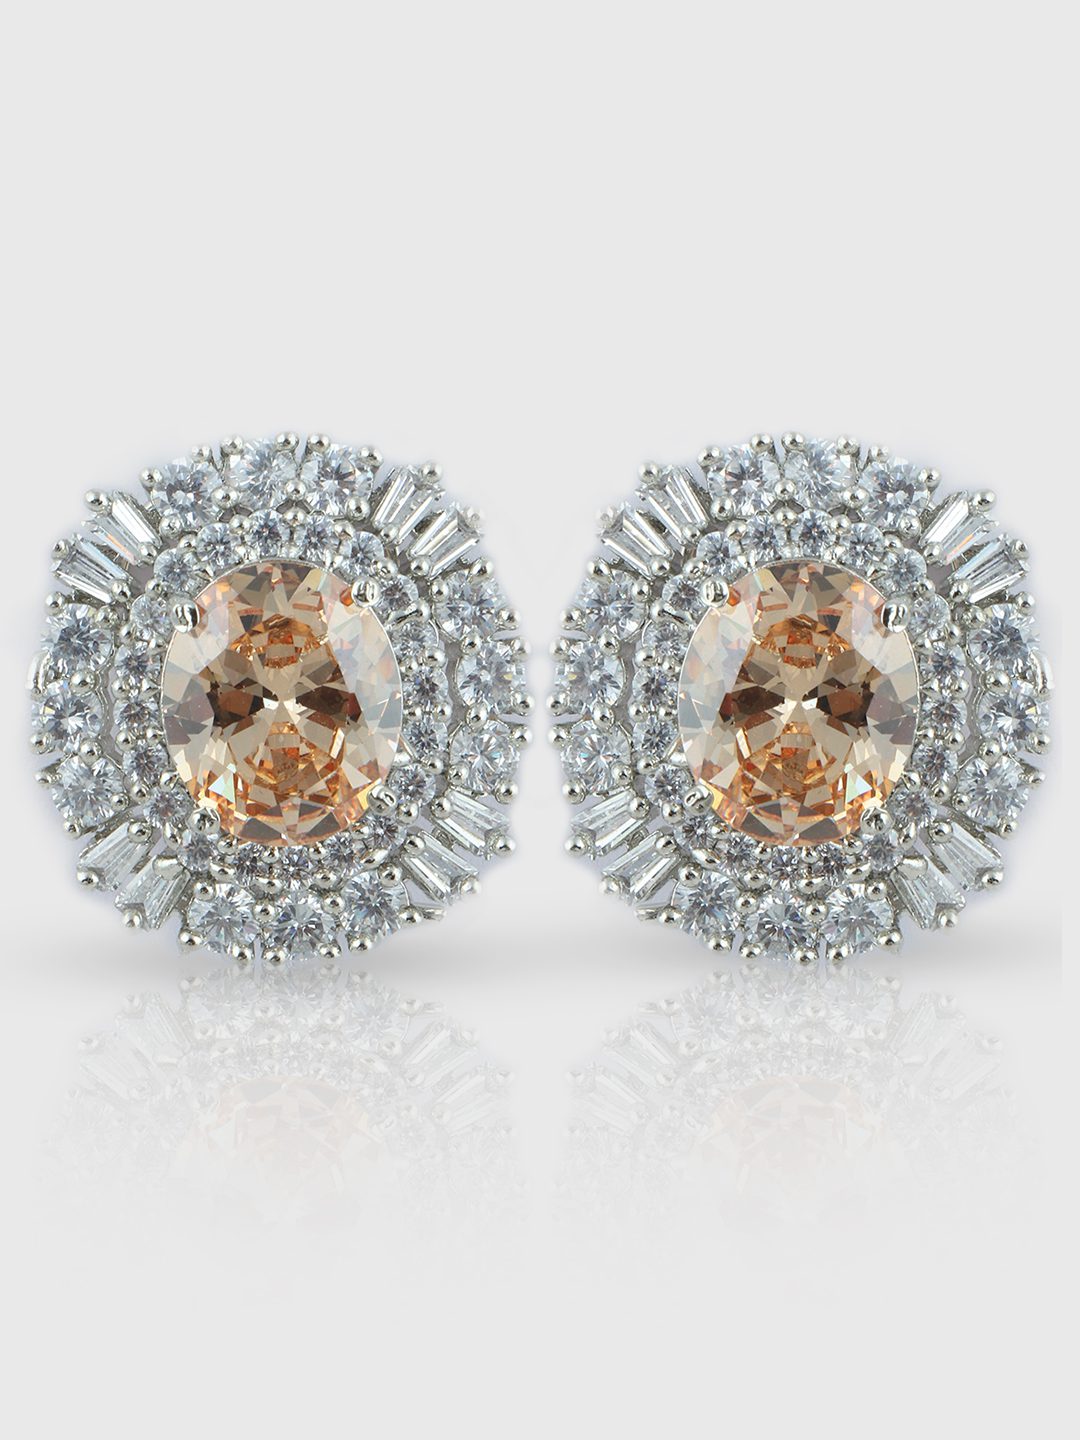 Pristine Rhodium Plated American Diamond Stud Earrings